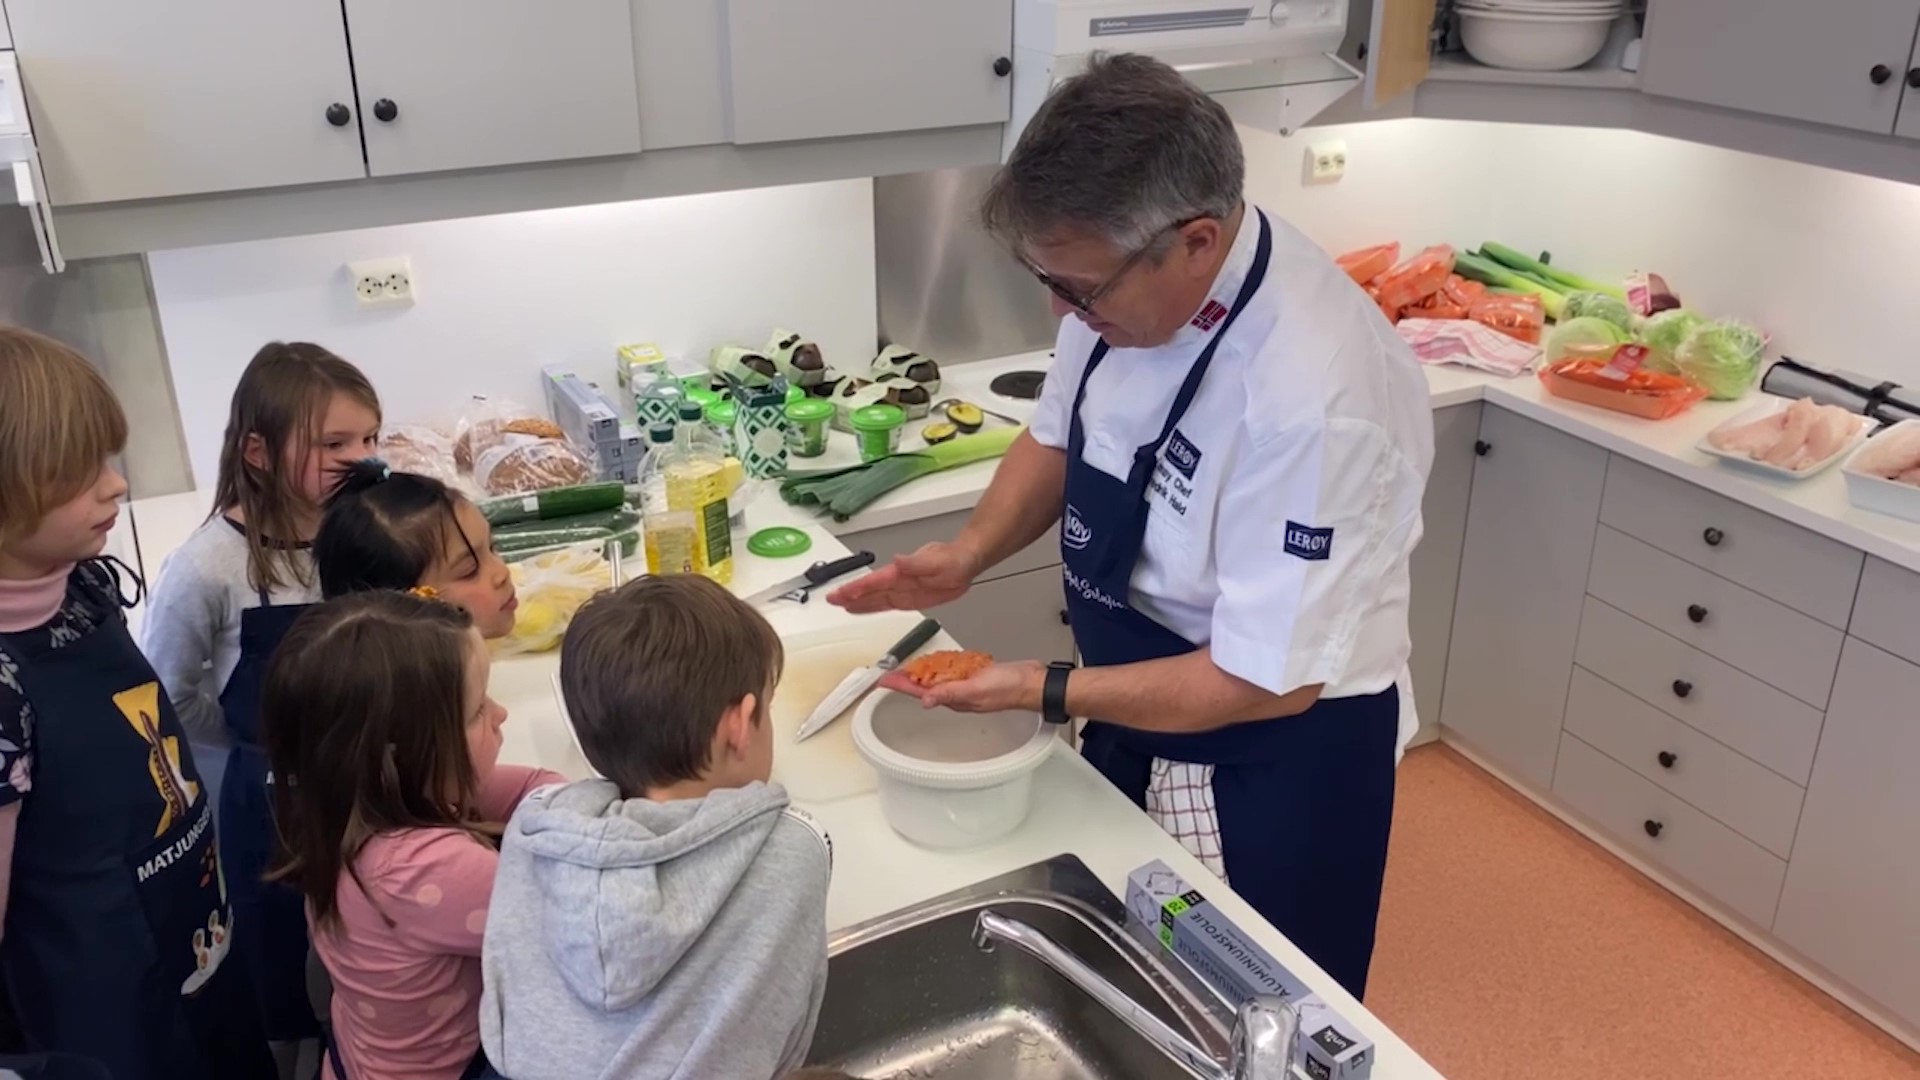 Children on the kitchen preparing food